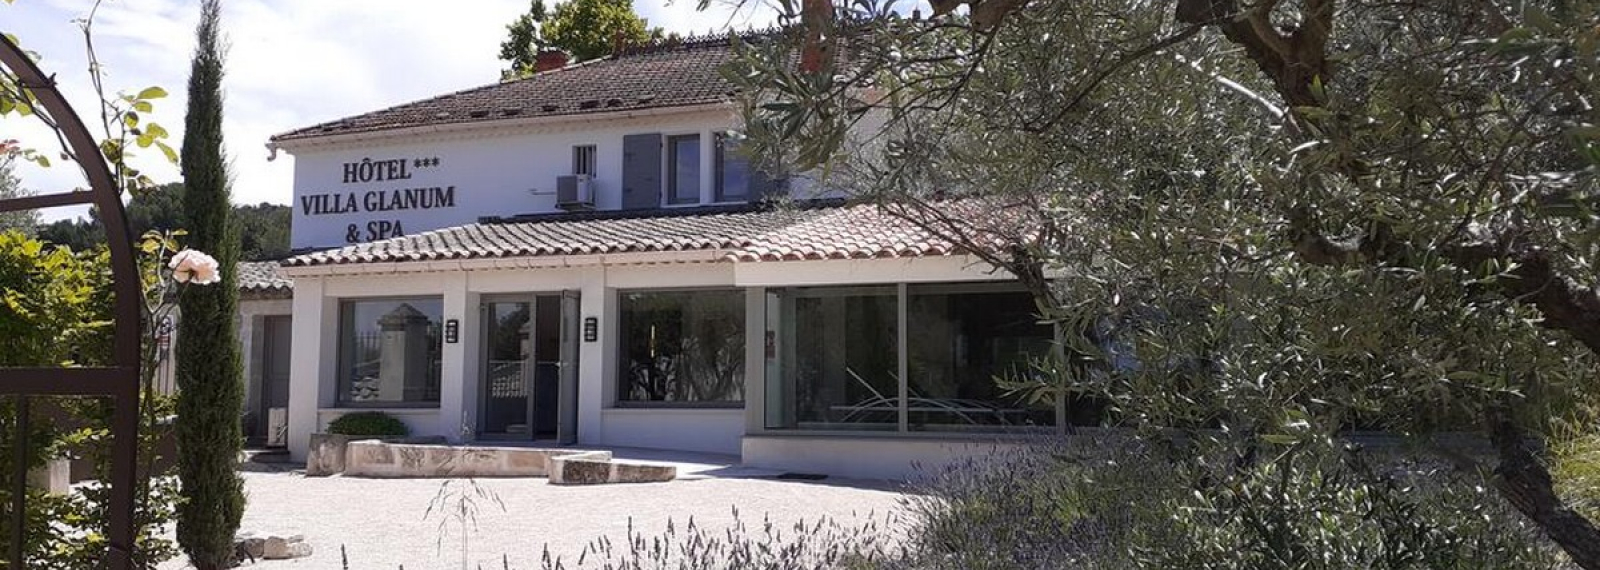 Hôtel Villa Glanum & spa à Saint-Rémy-de-Provence